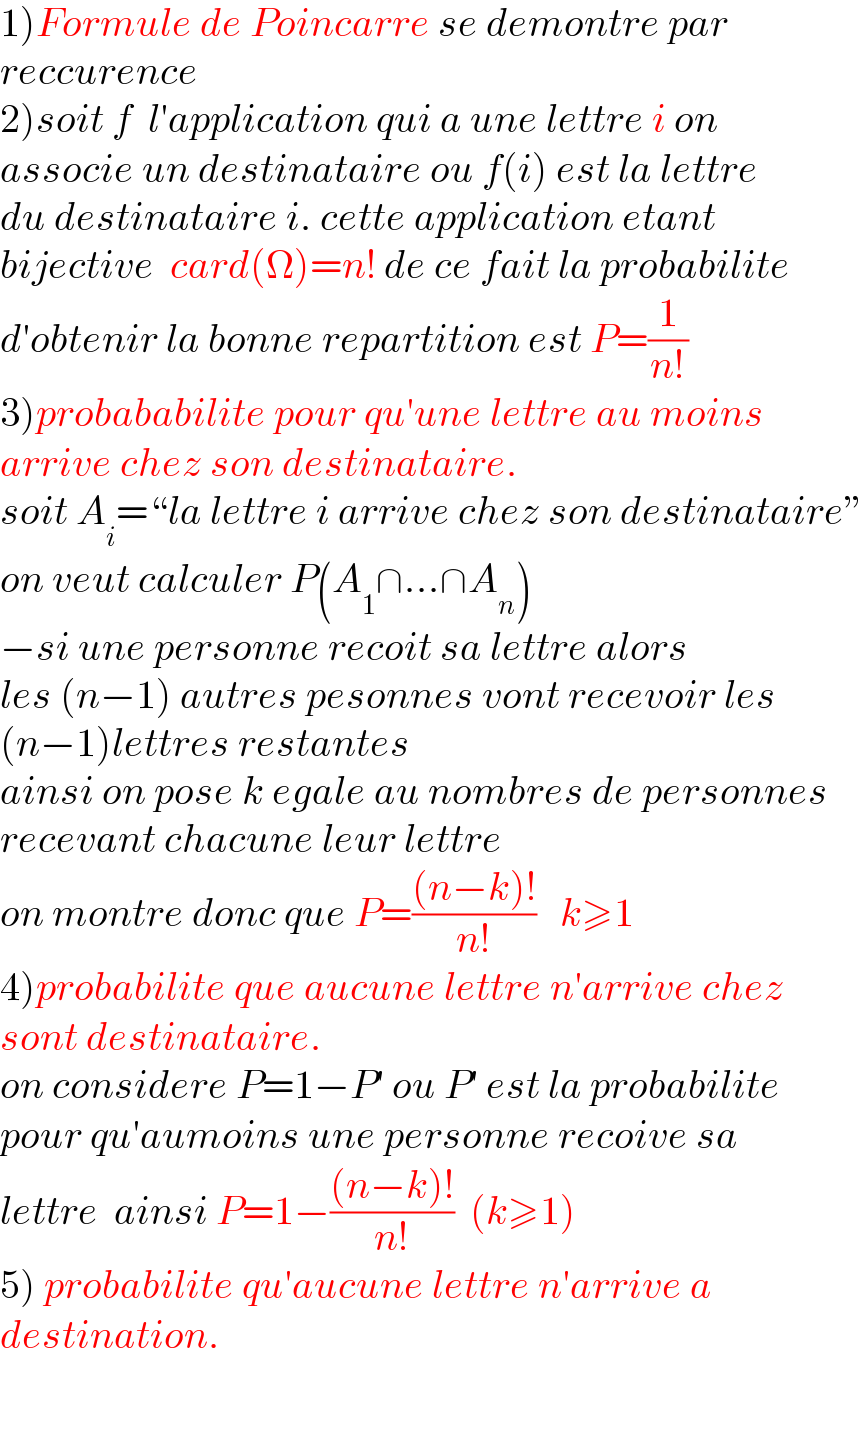 1)Formule de Poincarre se demontre par   reccurence  2)soit f  l′application qui a une lettre i on   associe un destinataire ou f(i) est la lettre  du destinataire i. cette application etant  bijective  card(Ω)=n! de ce fait la probabilite  d′obtenir la bonne repartition est P=(1/(n!))  3)probababilite pour qu′une lettre au moins  arrive chez son destinataire.  soit A_i =“la lettre i arrive chez son destinataire”  on veut calculer P(A_1 ∩...∩A_n )  −si une personne recoit sa lettre alors   les (n−1) autres pesonnes vont recevoir les  (n−1)lettres restantes  ainsi on pose k egale au nombres de personnes  recevant chacune leur lettre  on montre donc que P=(((n−k)!)/(n!))   k≥1  4)probabilite que aucune lettre n′arrive chez  sont destinataire.  on considere P=1−P′ ou P′ est la probabilite  pour qu′aumoins une personne recoive sa   lettre  ainsi P=1−(((n−k)!)/(n!))  (k≥1)  5) probabilite qu′aucune lettre n′arrive a   destination.      